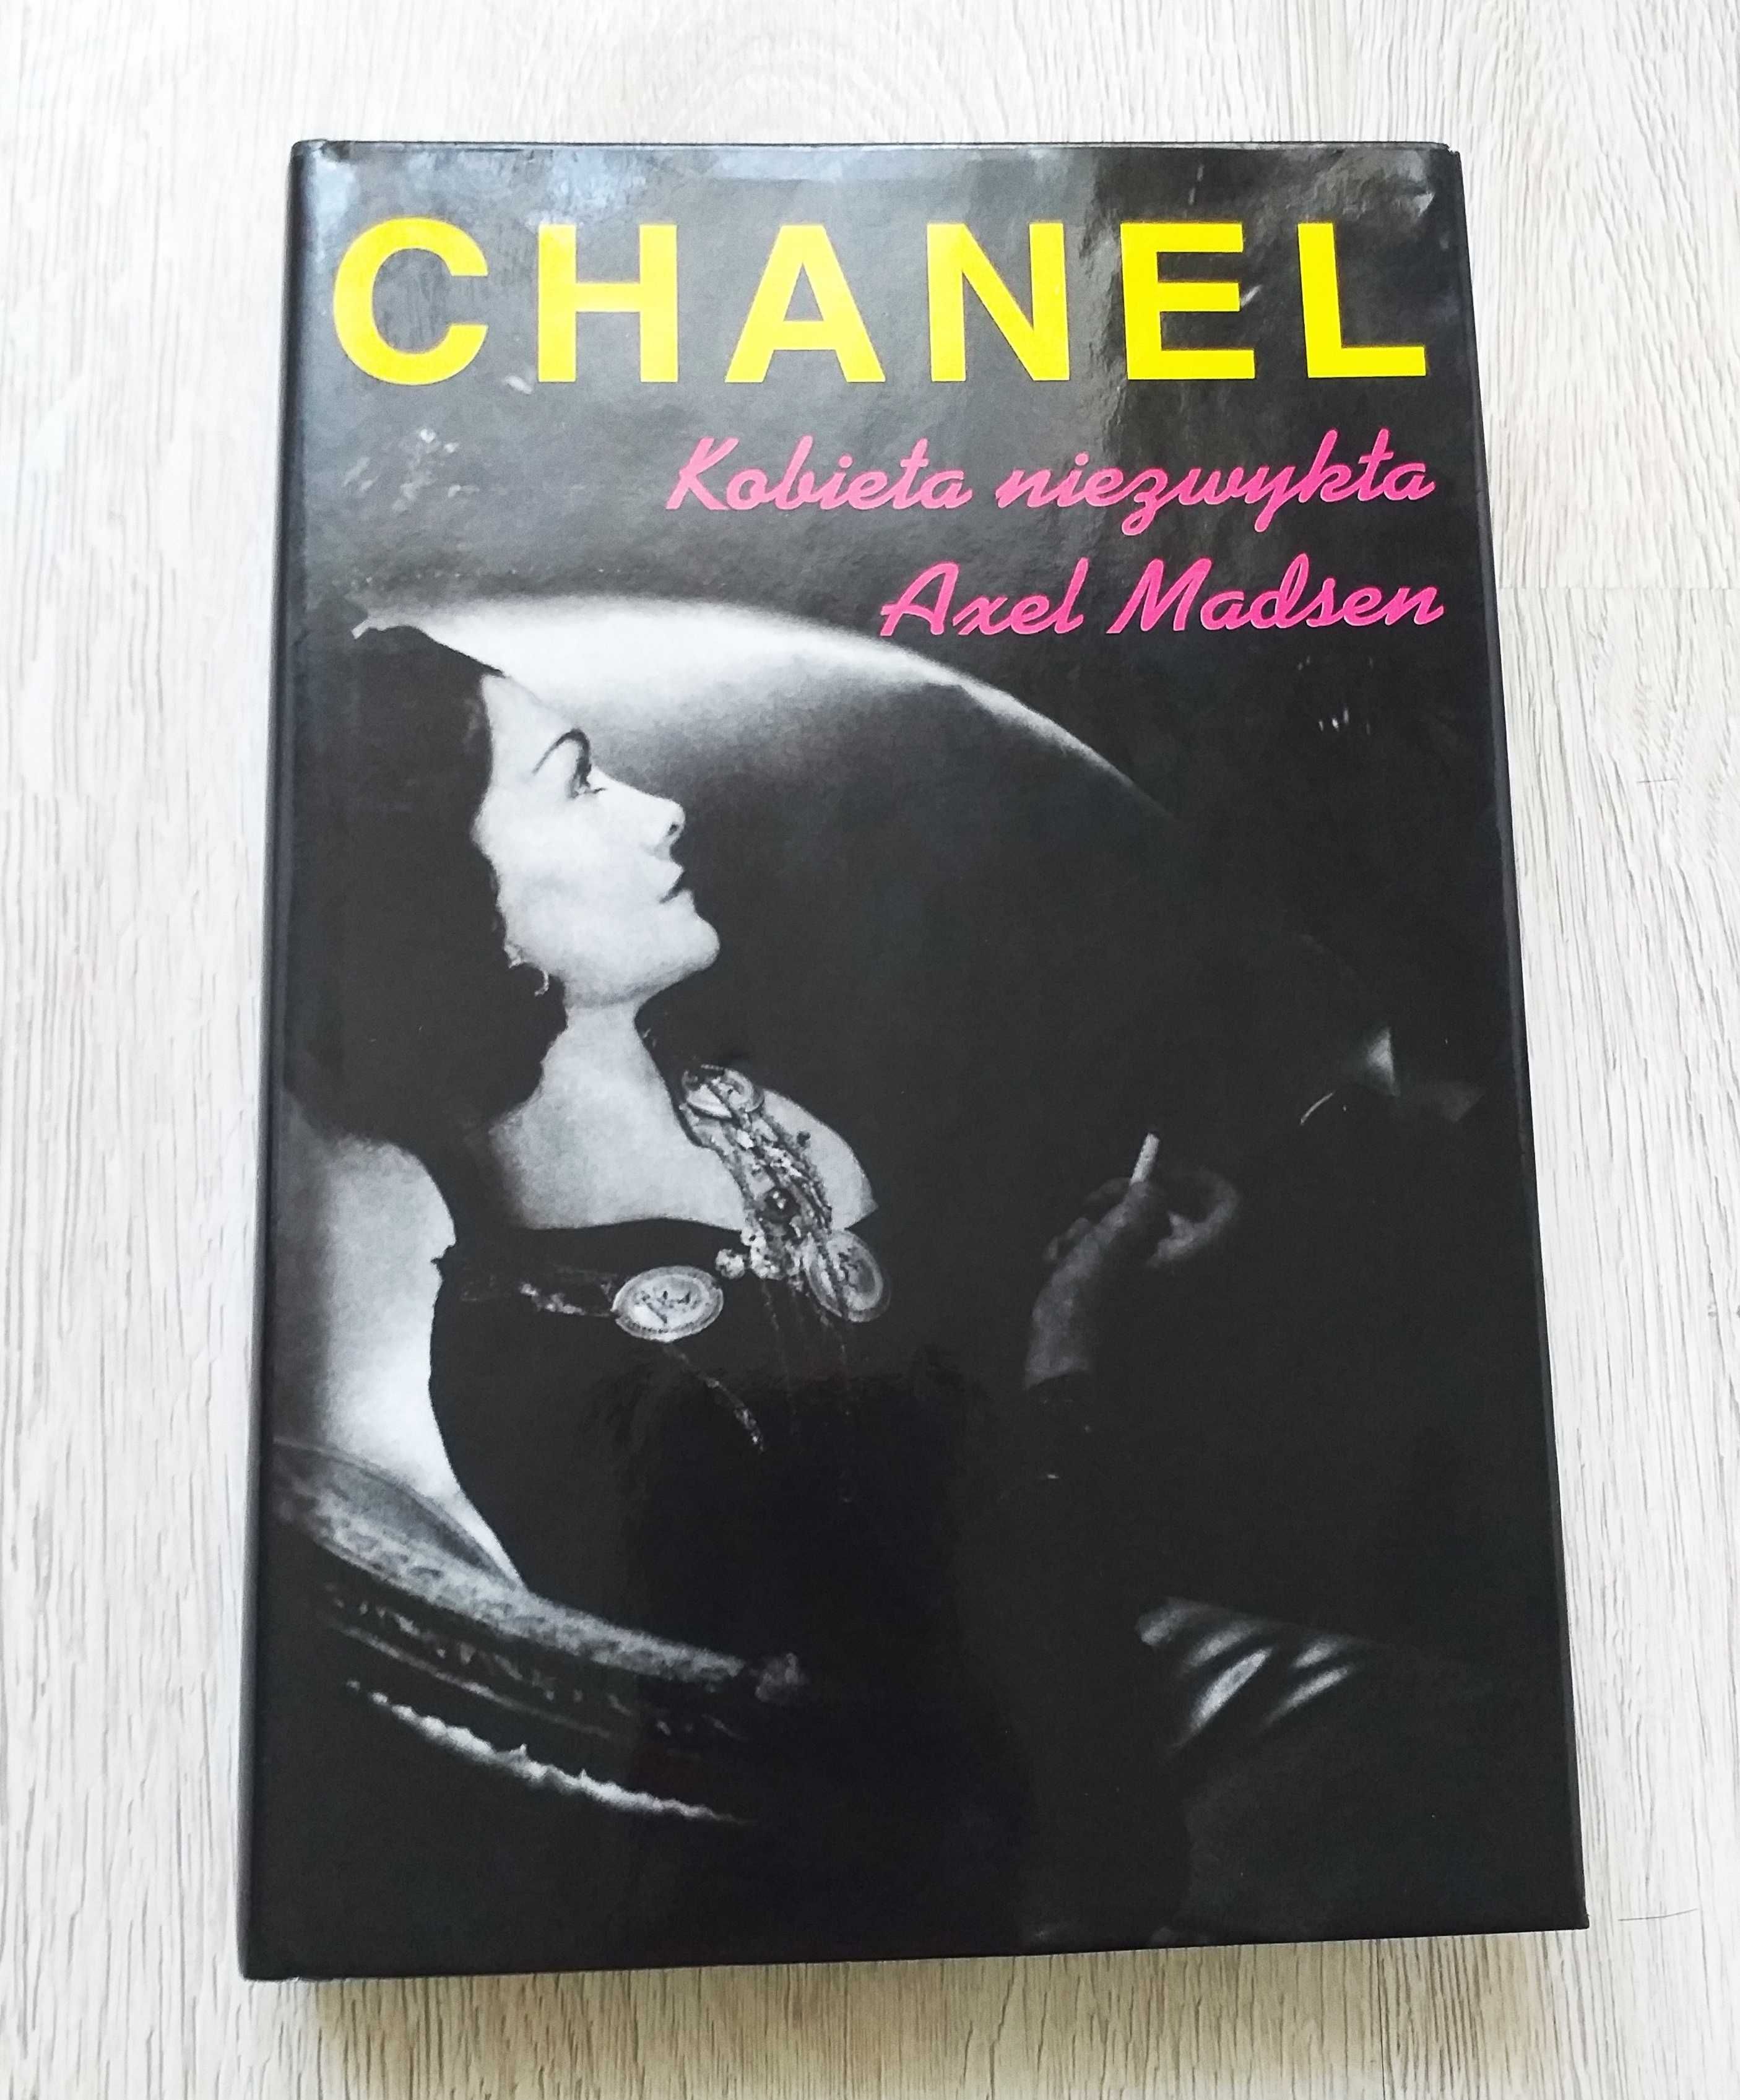 CHANEL- Kobieta niezwykła  Axel Madsen /biografia